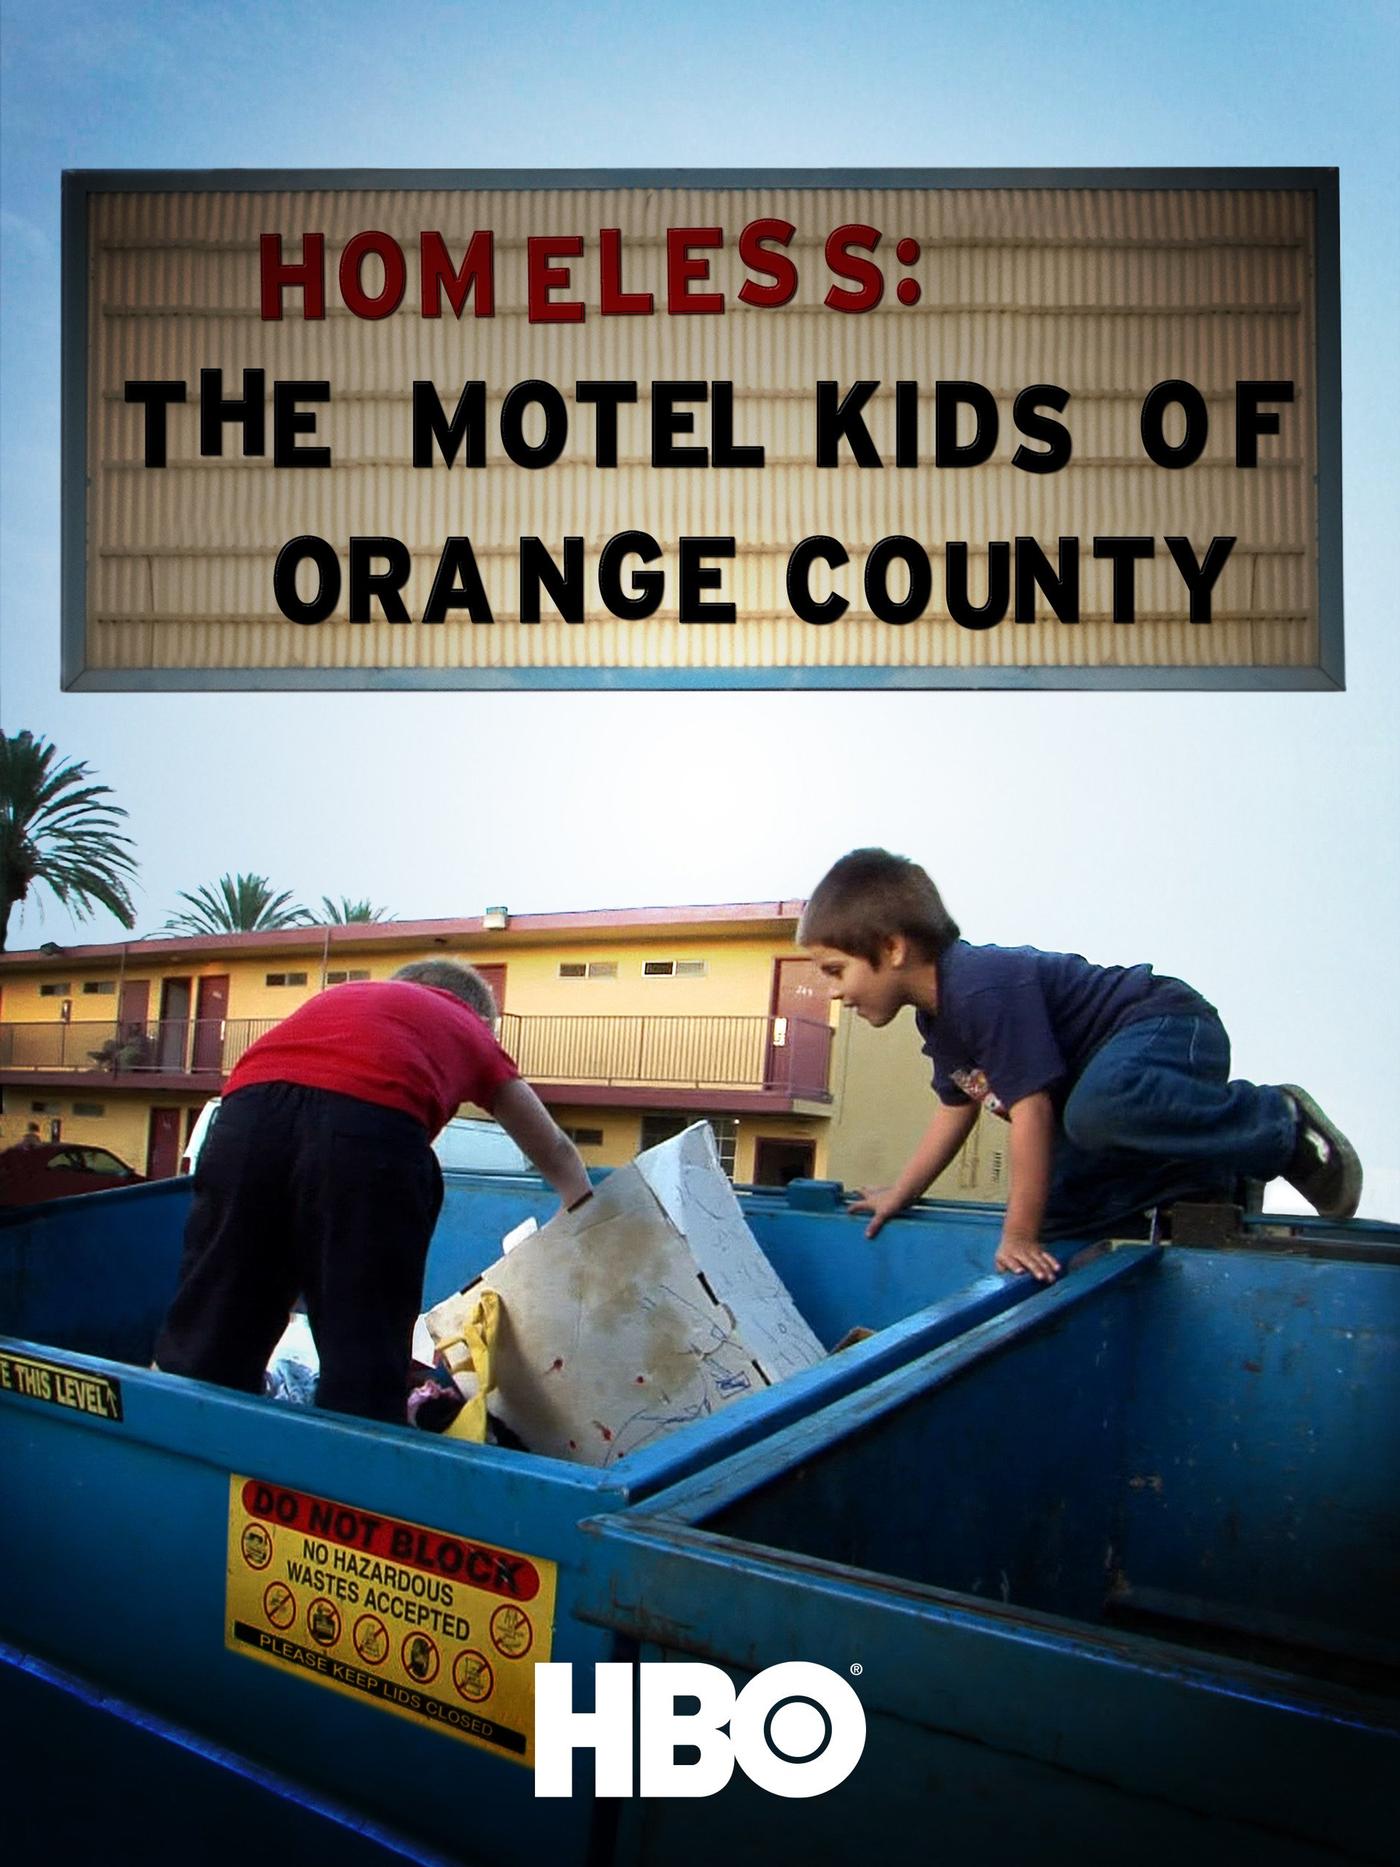 Homeless, Motel Kids, Orange County, Movie Poster, HBO, Dumpster, Kids